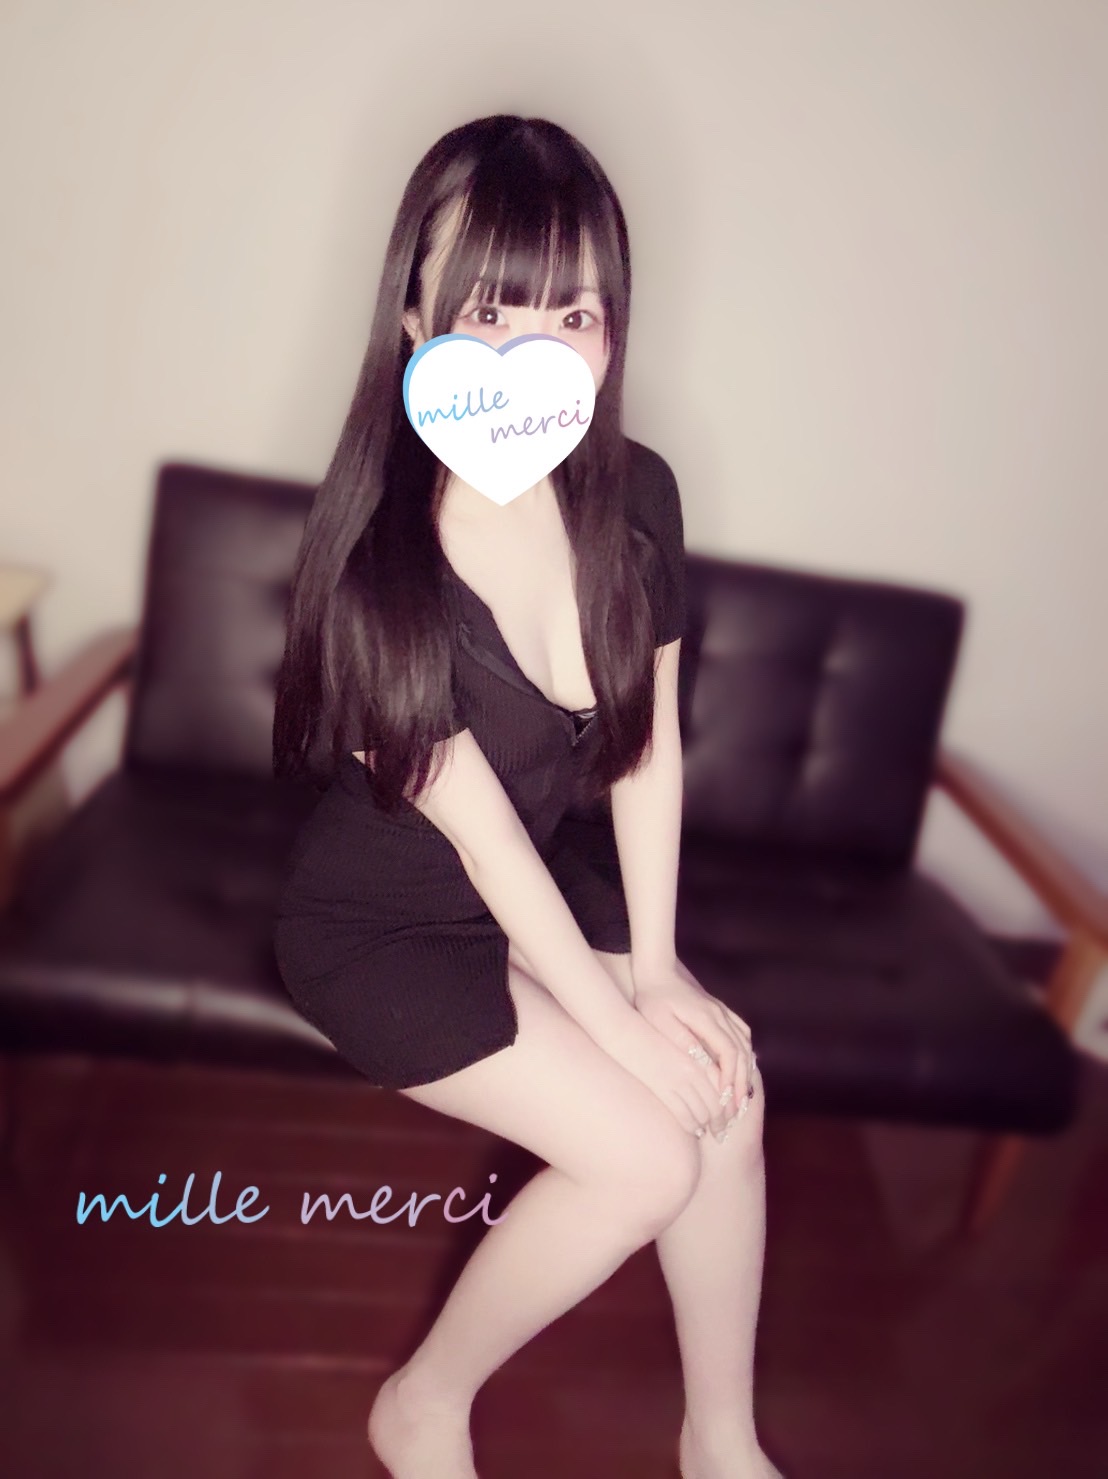 mille-merci～ミルメルシィ勝川